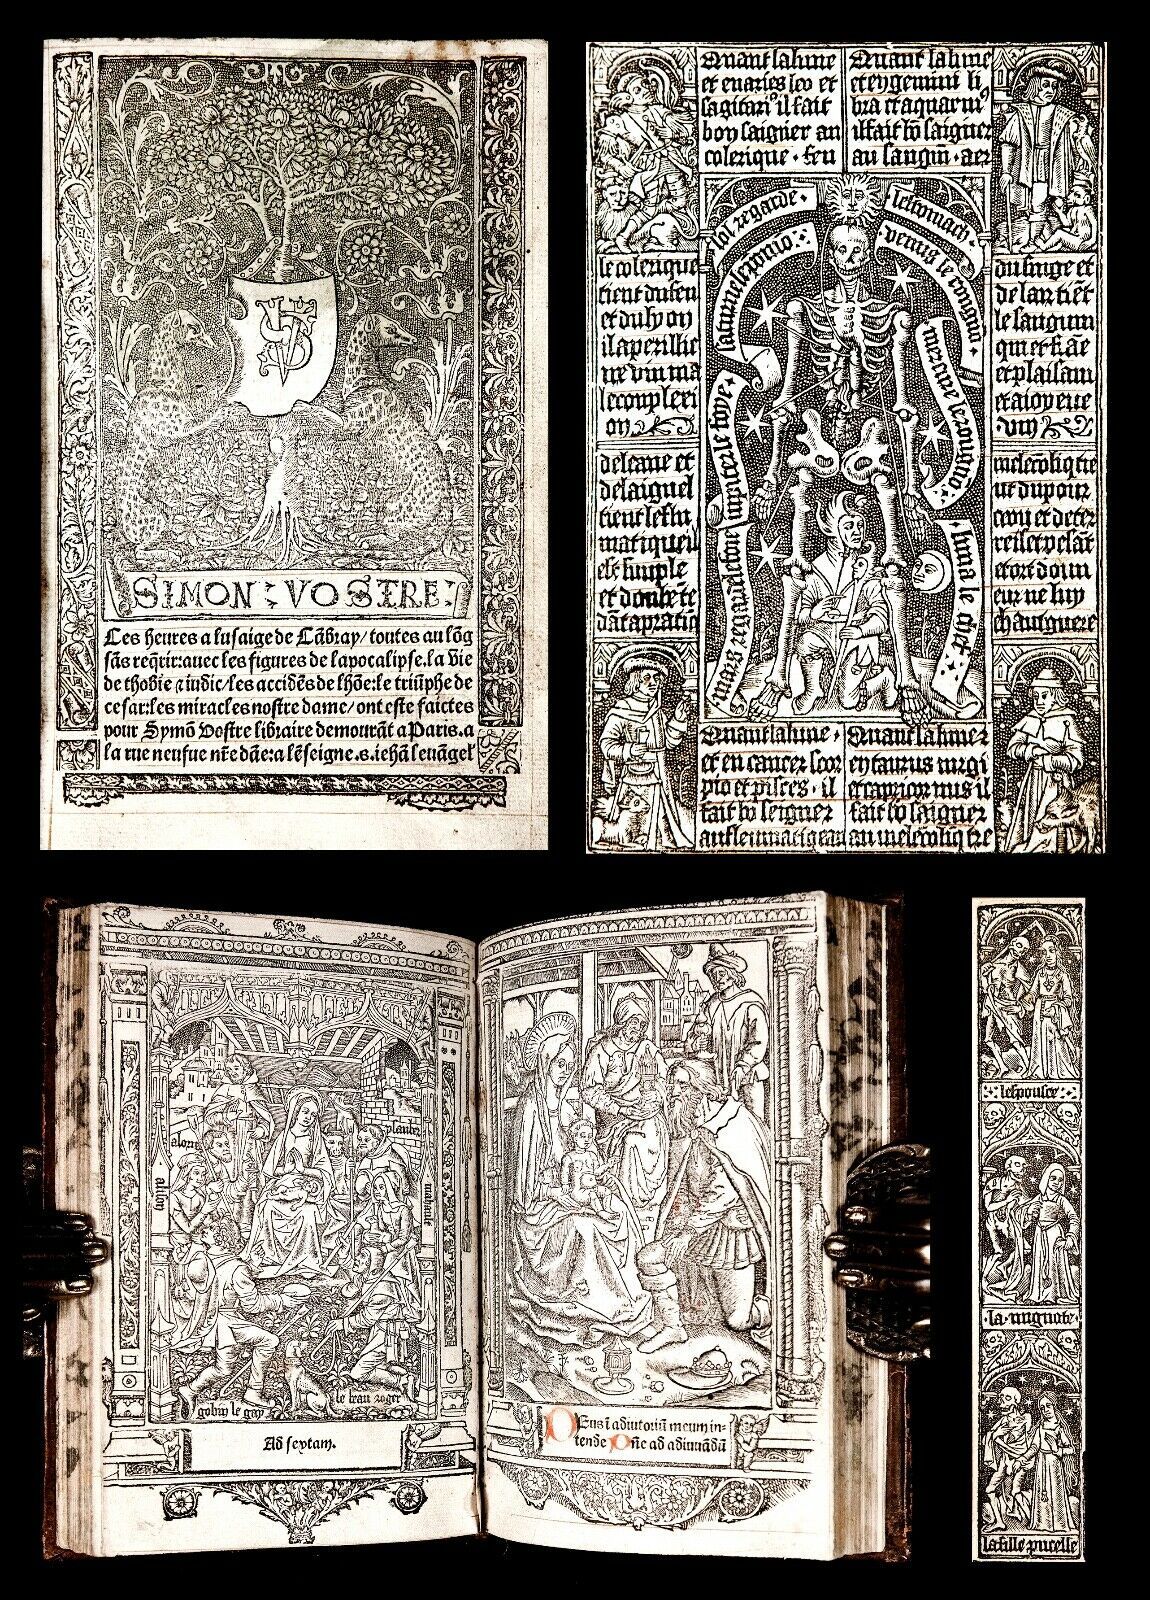 Una eccezionale copia del “Libro delle ore” in uso a Cambrai (anno 1520) venduta a 4.445 € su eBay